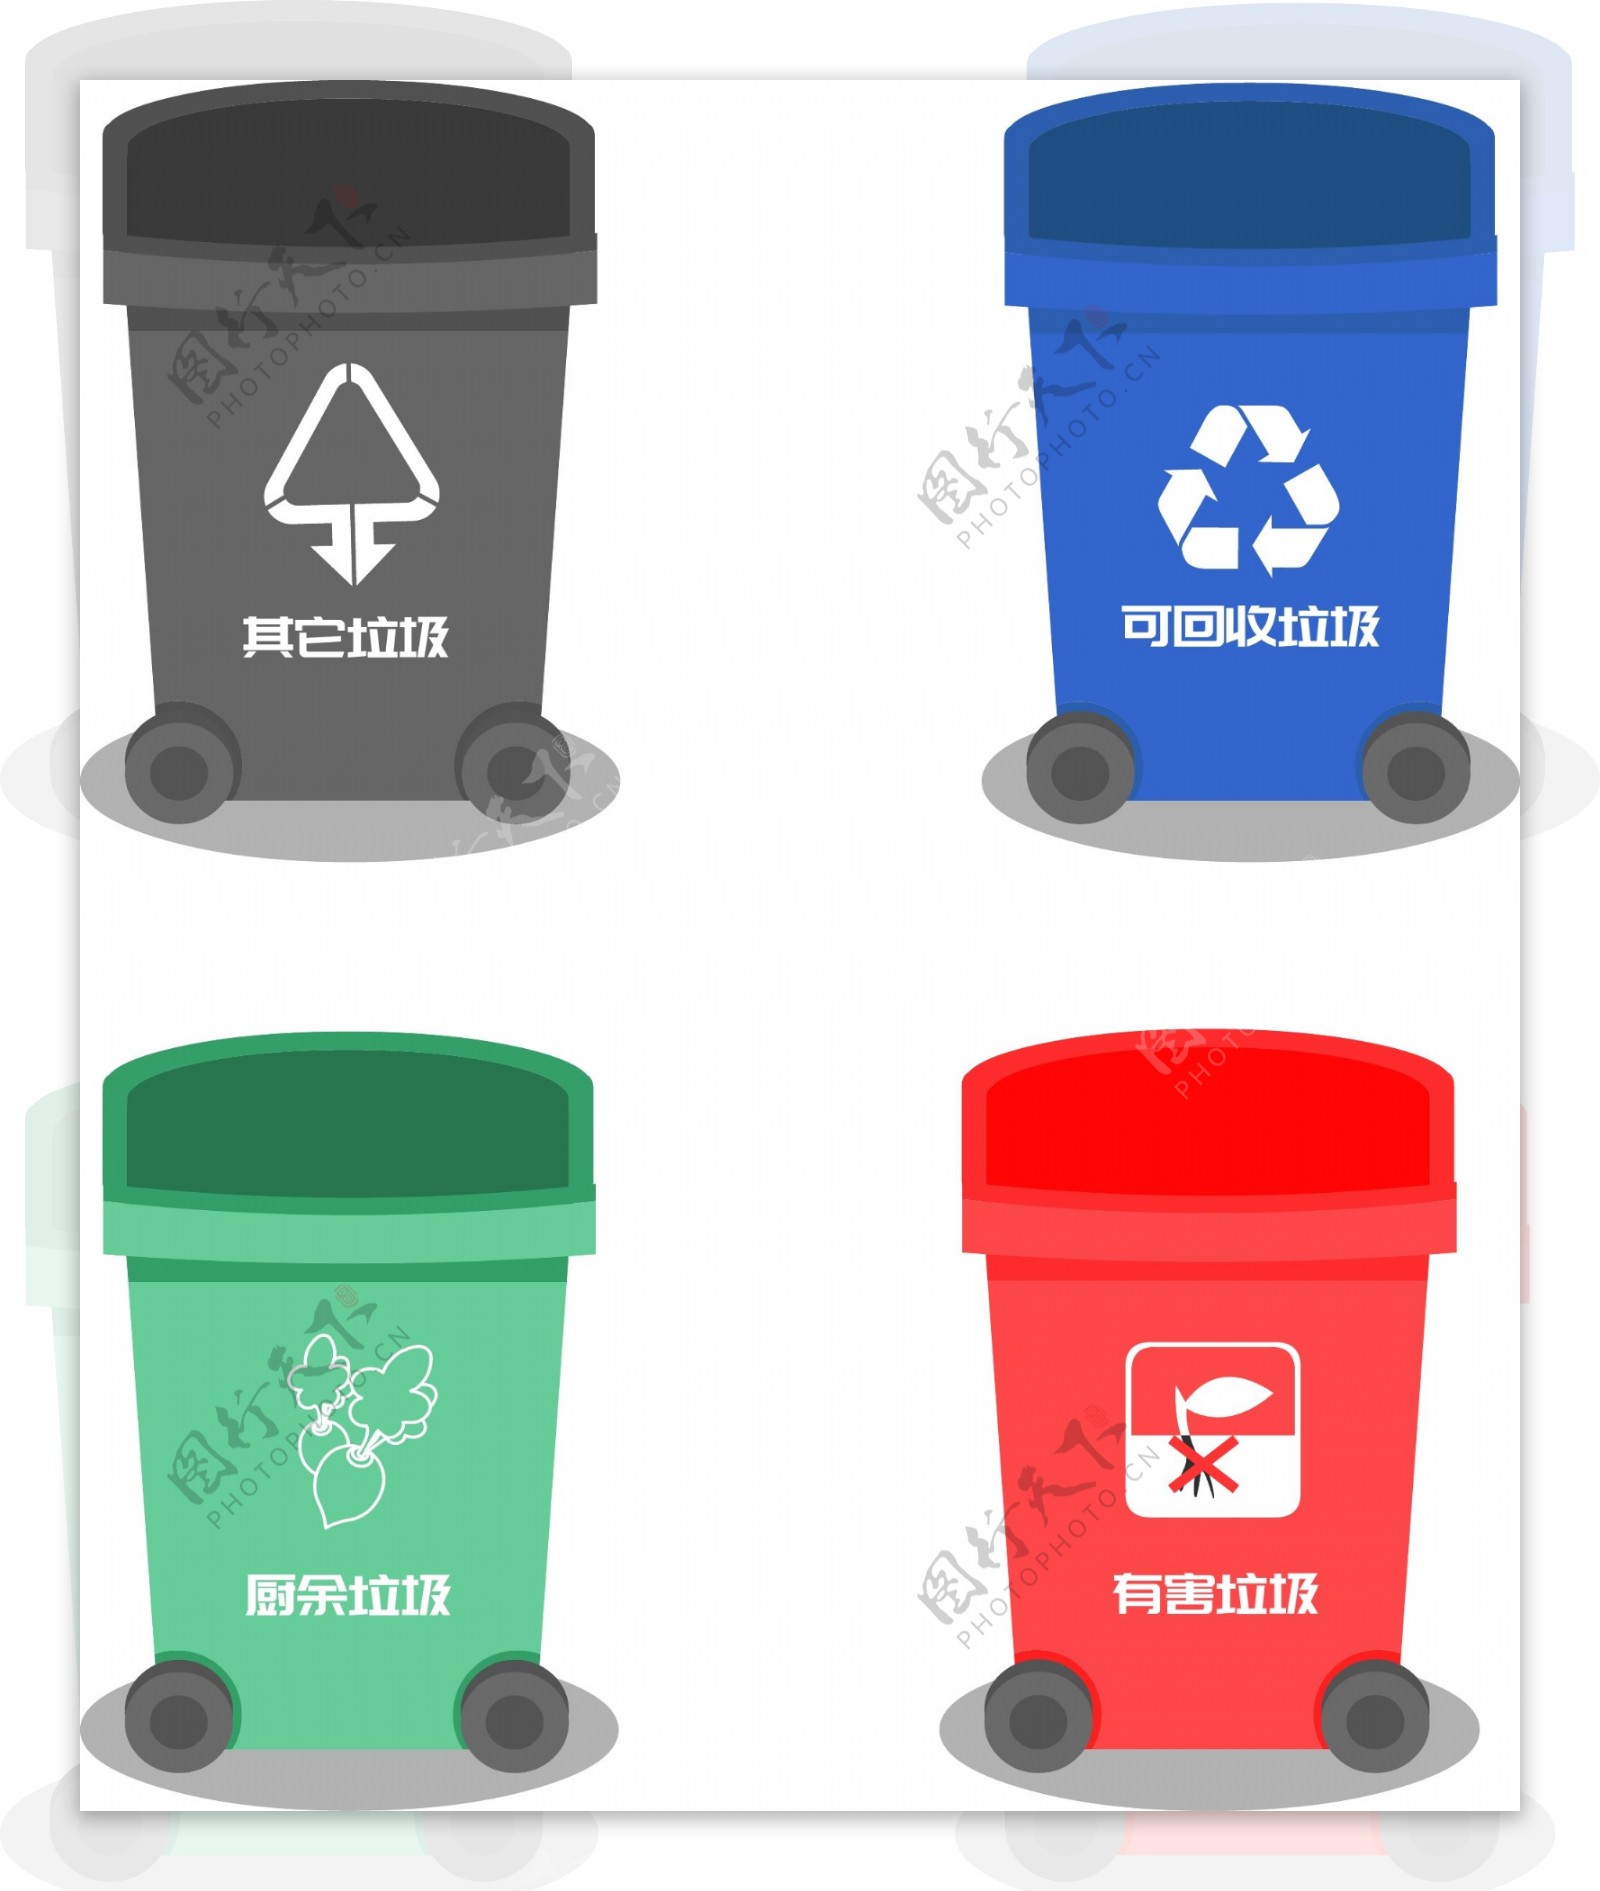 垃圾分类生活垃圾环保垃圾桶矢量标志